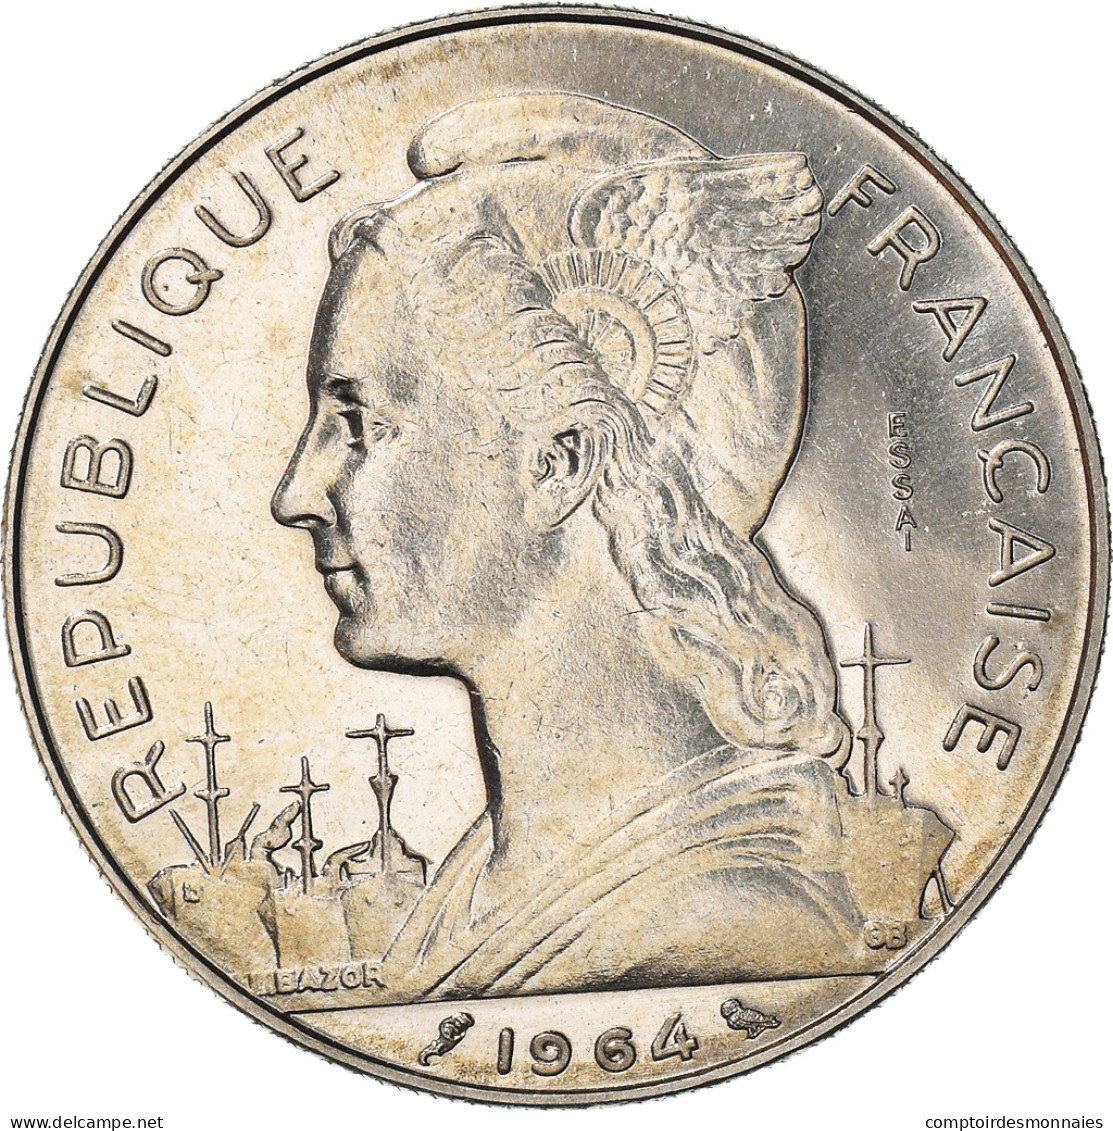 Monnaie, Réunion, 100 Francs, 1964, ESSAI, SPL, Nickel, KM:E10 - Réunion